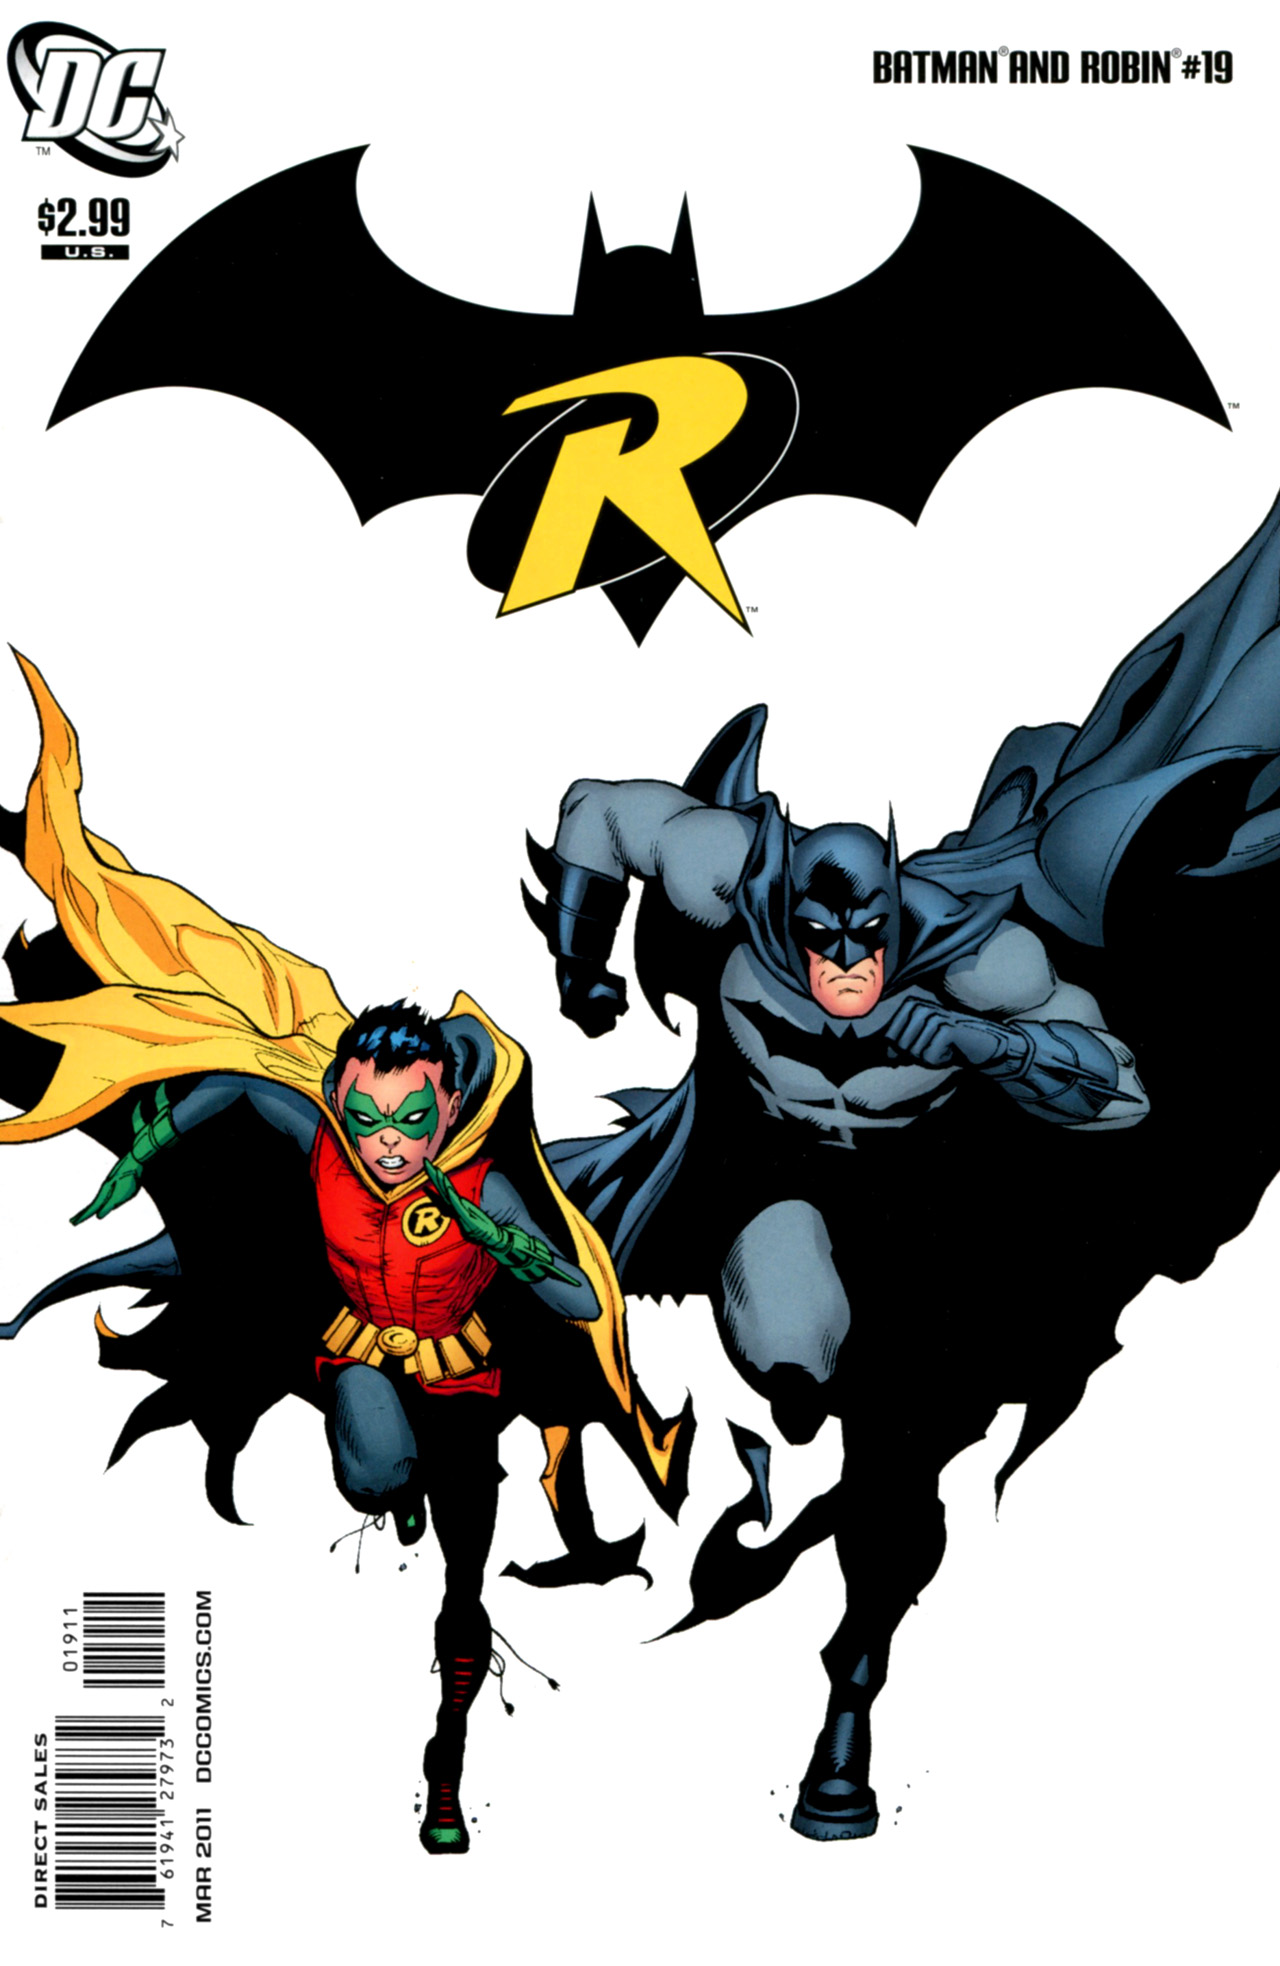 batman vol 1 new 52